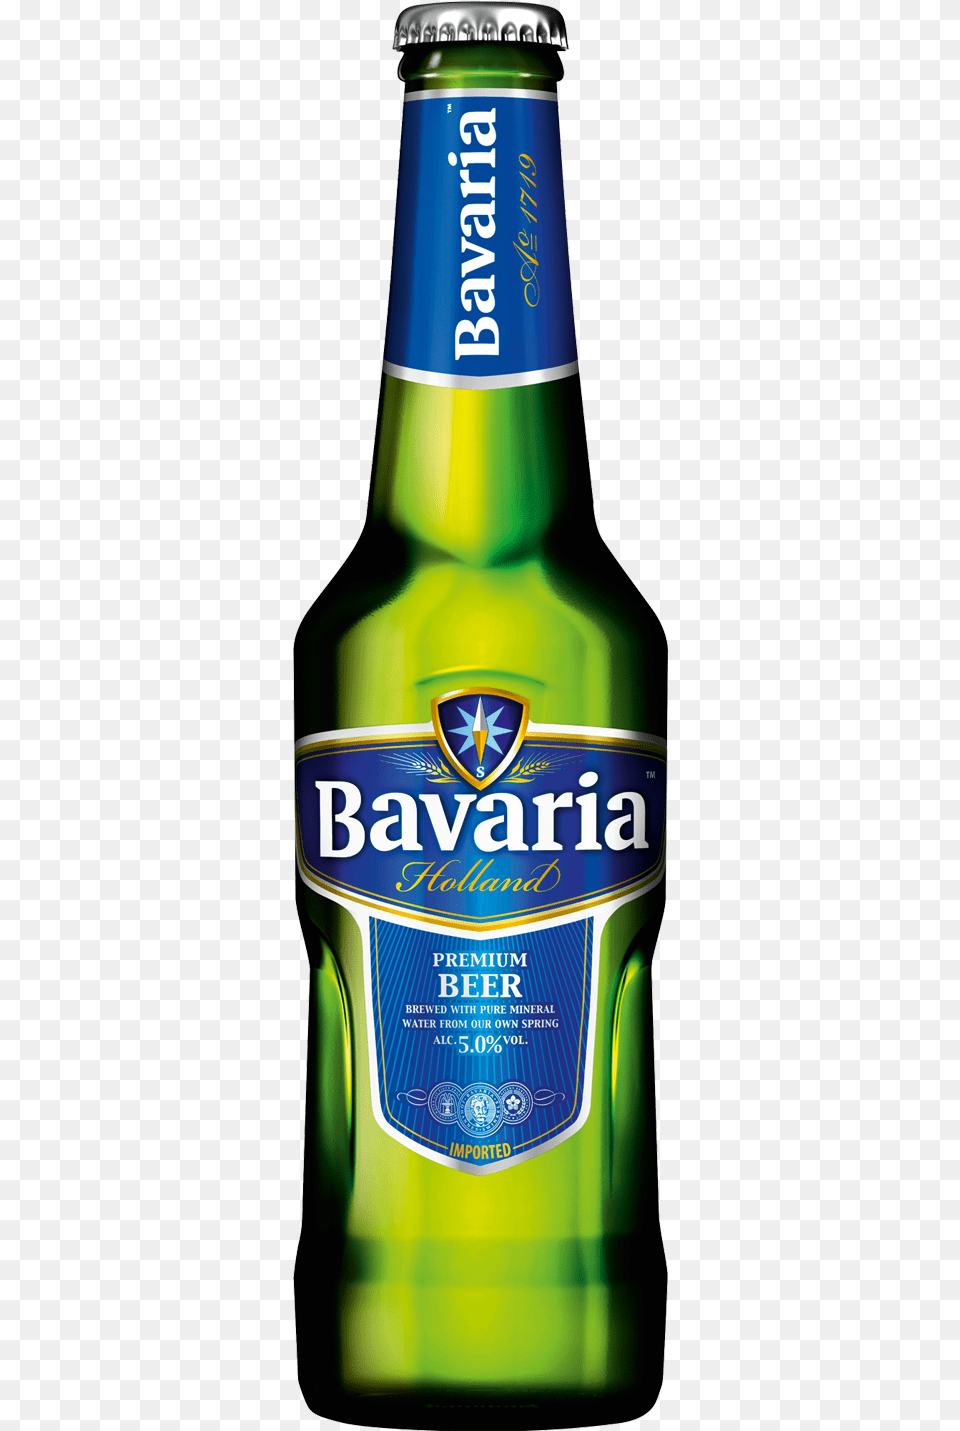 Bavaria Premium Beer 330ml Bavaria Premium Beer, Alcohol, Beer Bottle, Beverage, Bottle Free Png